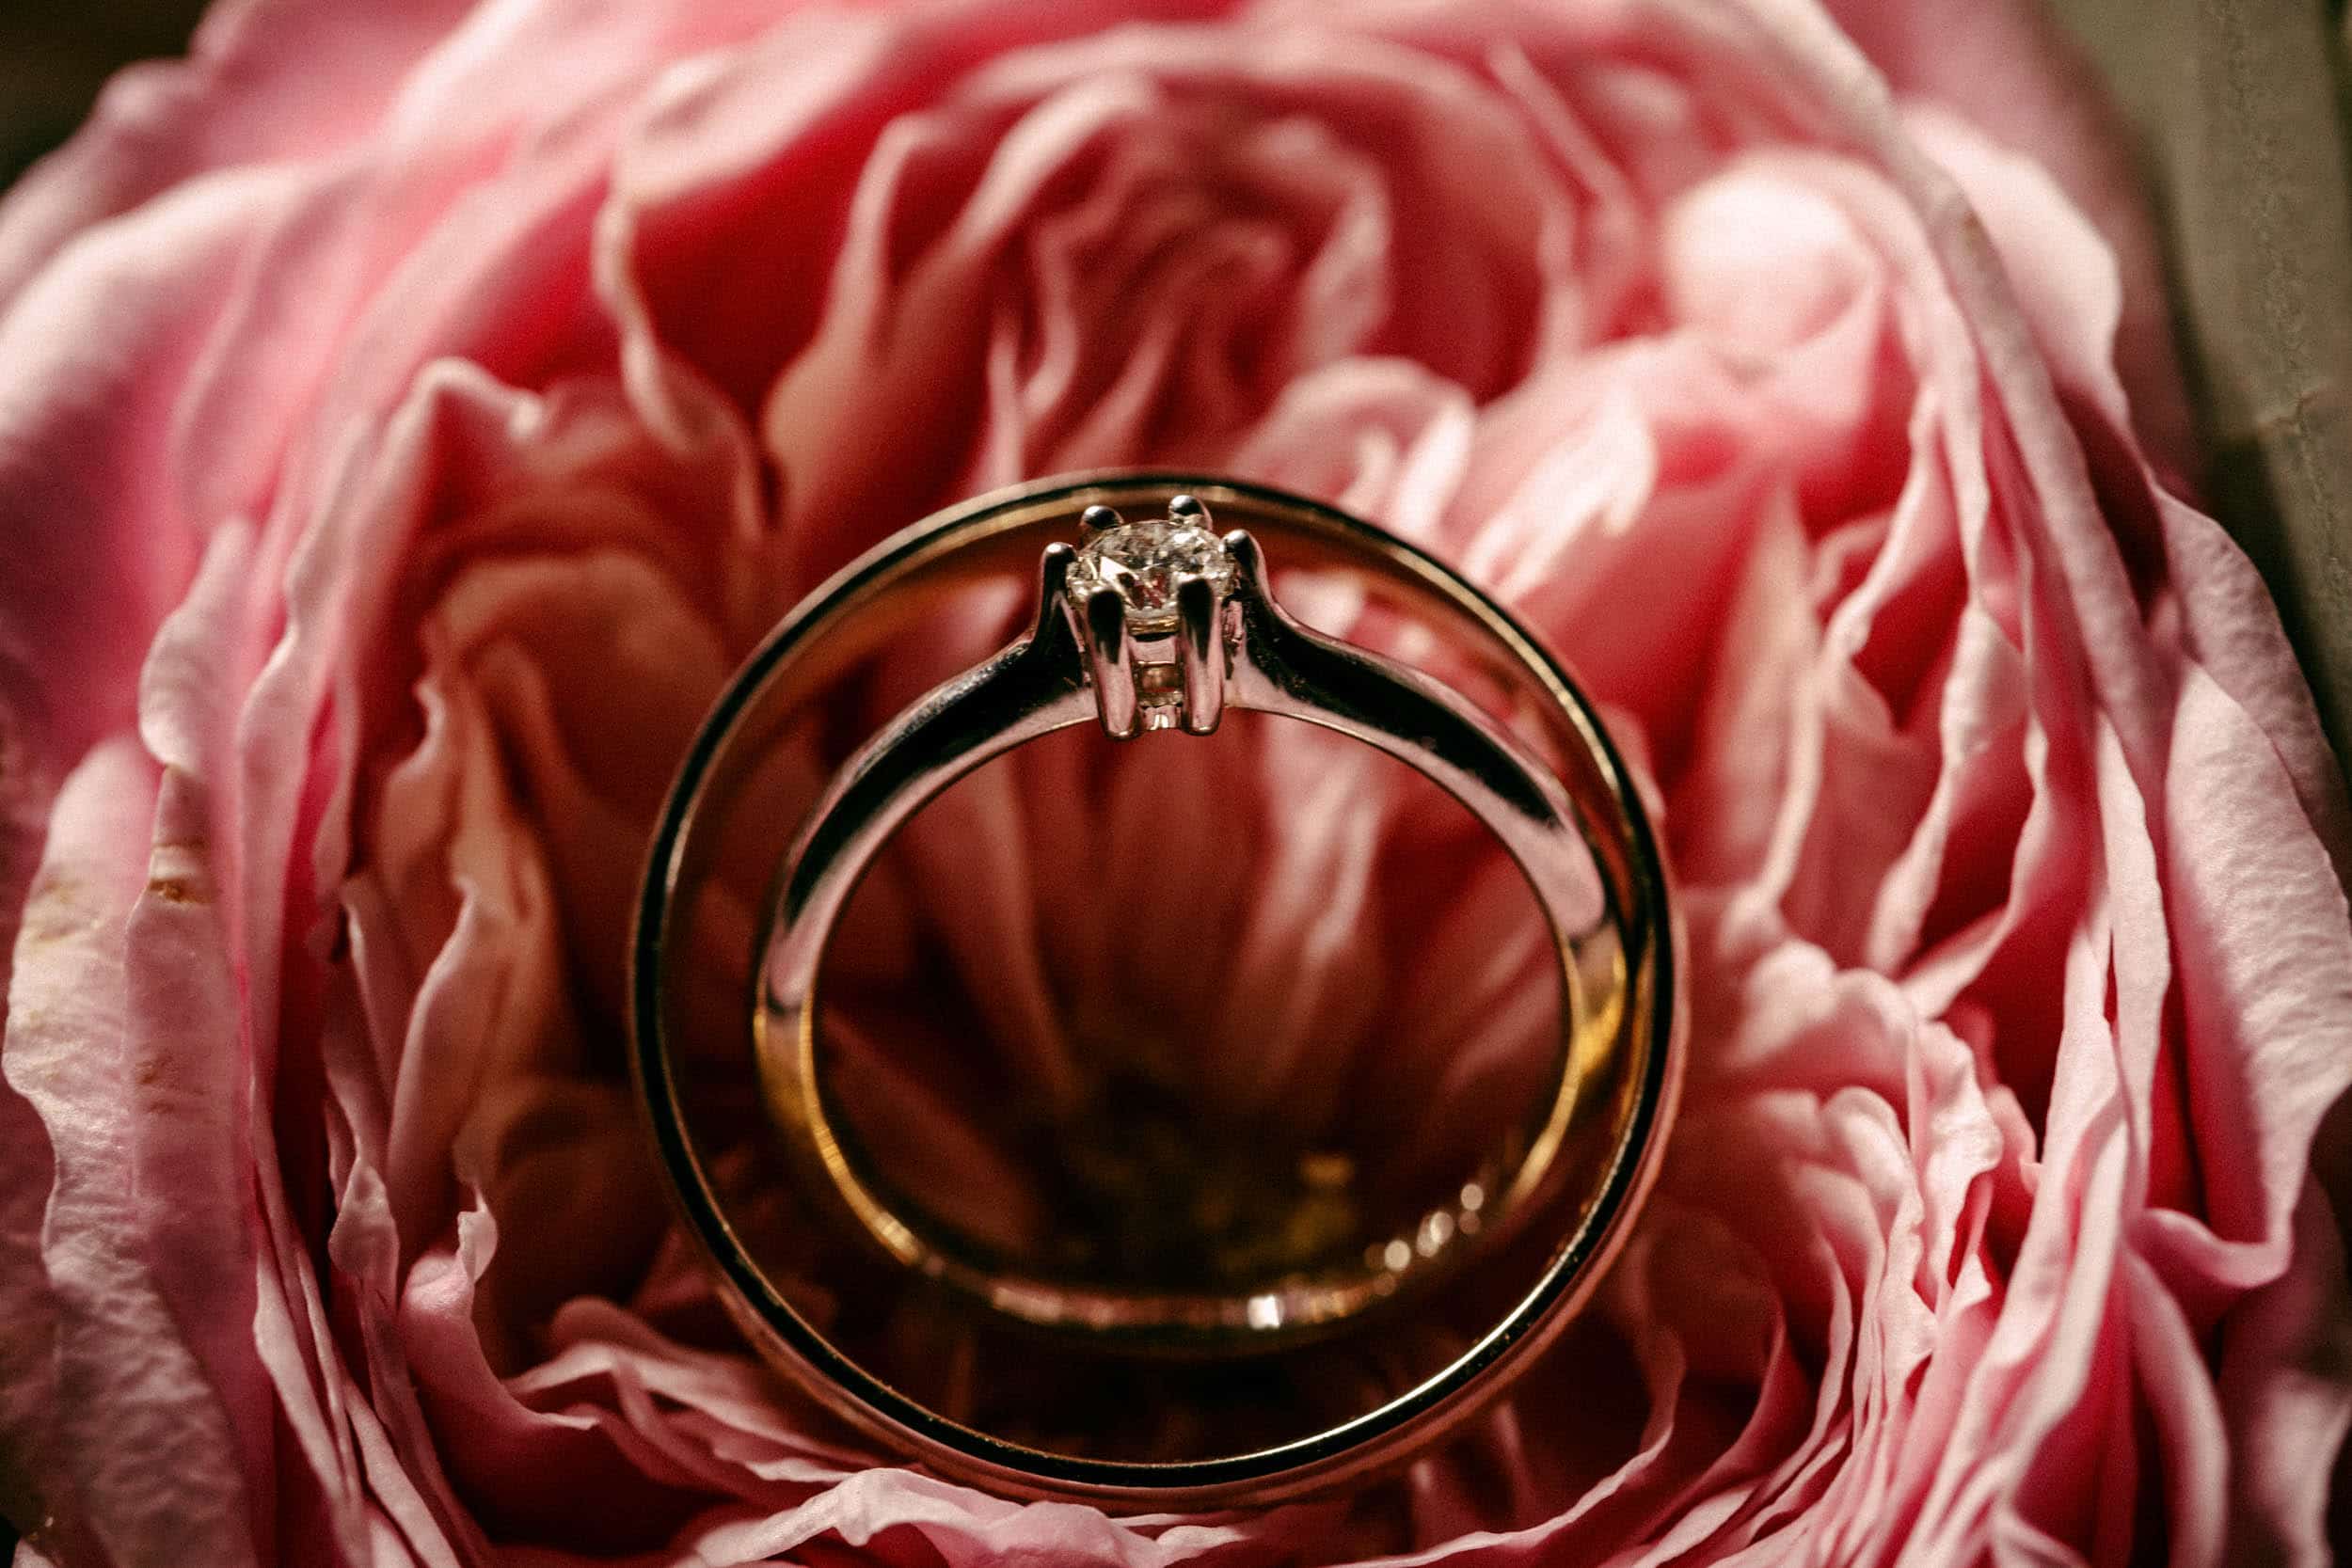 De perfecte bruiloft wordt vastgelegd op een Trouwfoto met een verlovingsring die elegant op een roze bloem rust.